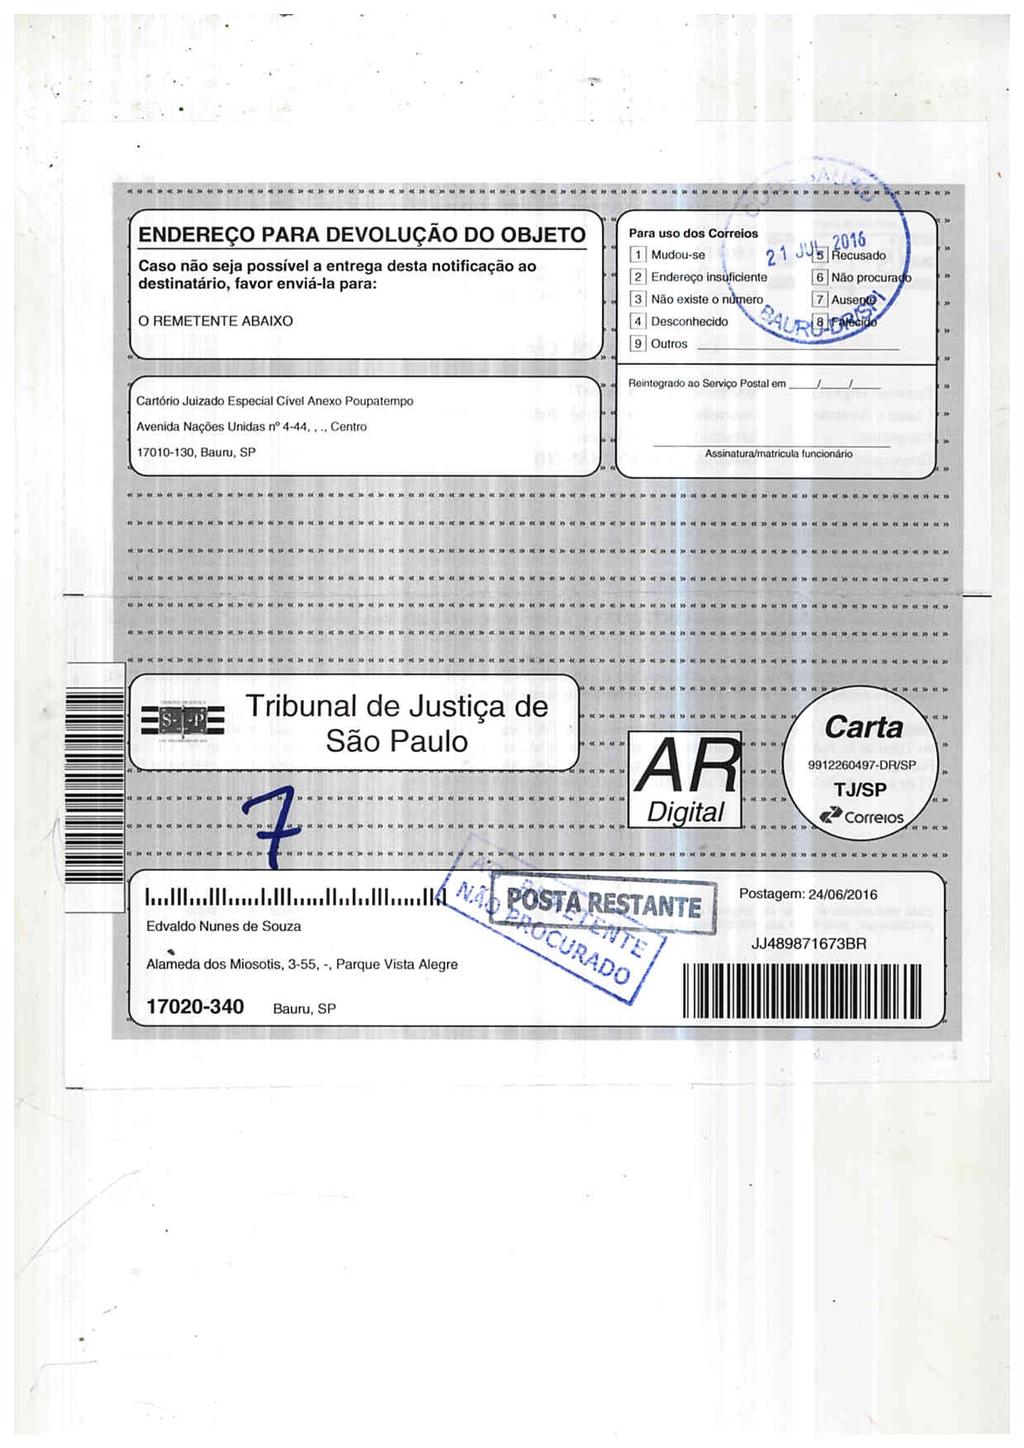 fls. 27 Este documento é cópia do original, assinado digitalmente por FABIO HENRIQUE FELIPE, liberado nos autos em 26/07/2016 às 09:05.